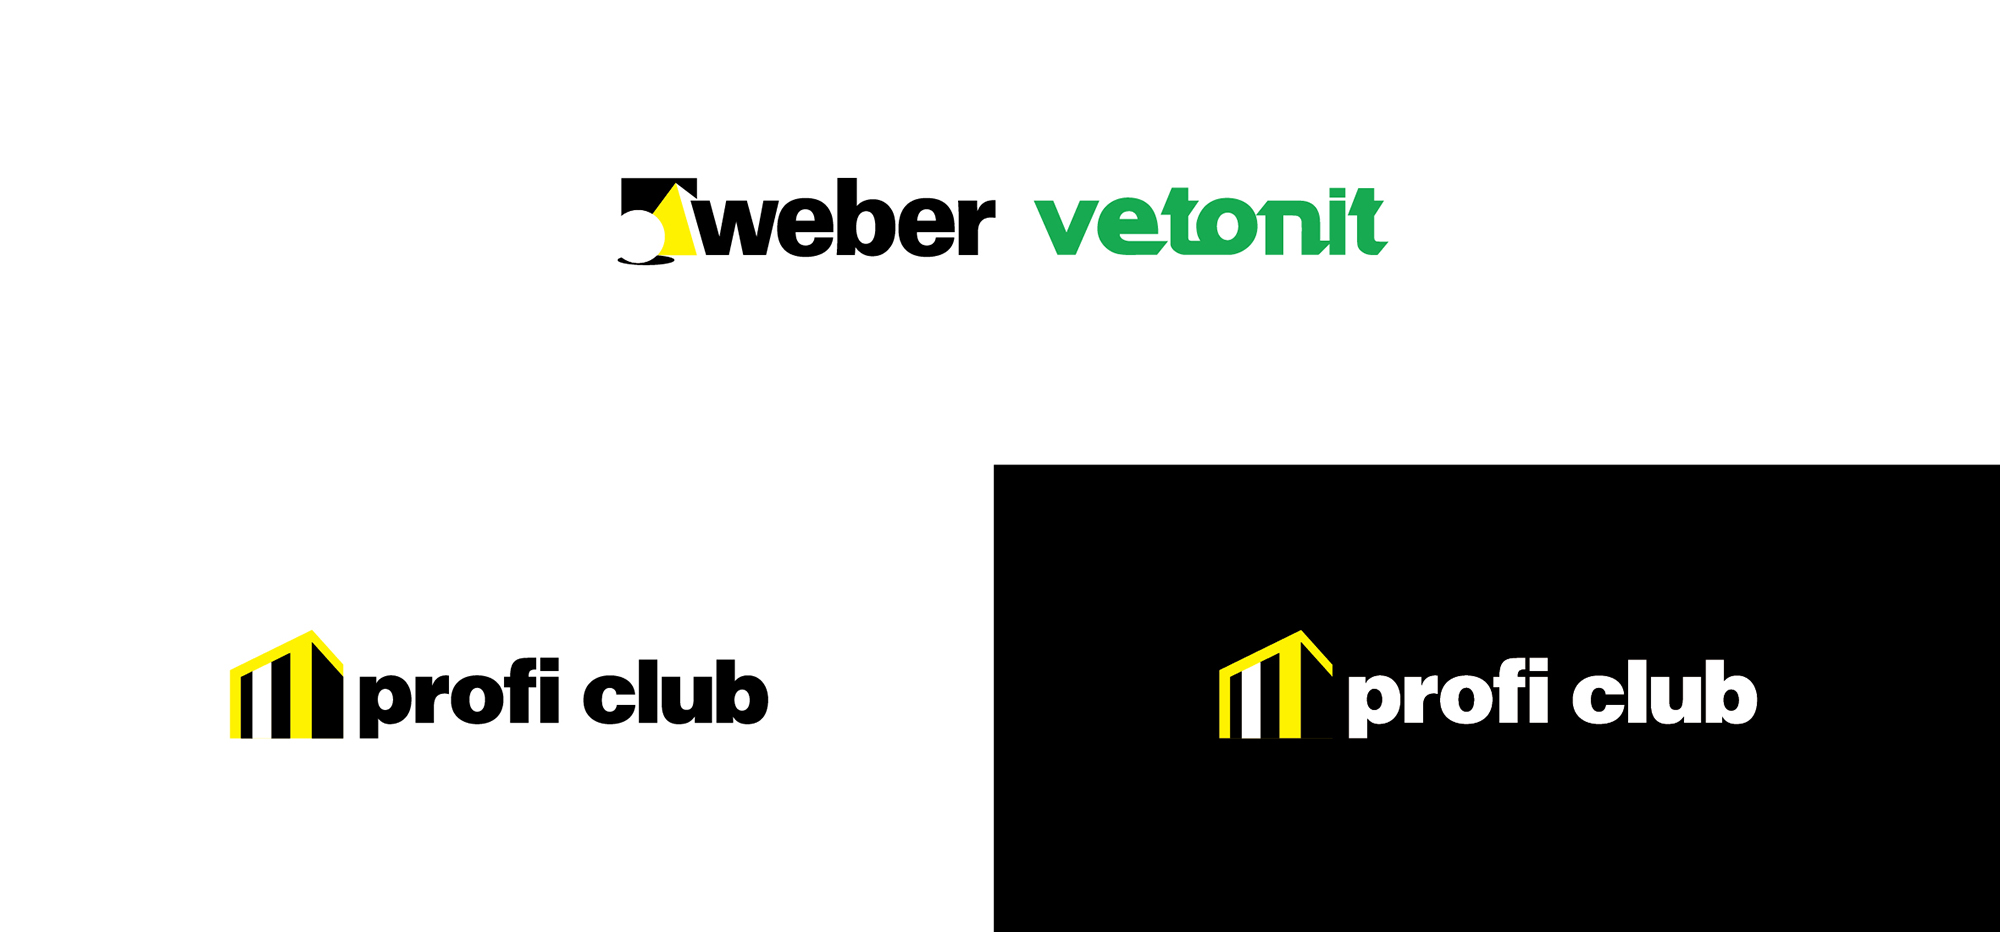 Логотип и дизайн-концепция промо-материалов для рекламной кампании школы мастерства WEBER-VETONIT